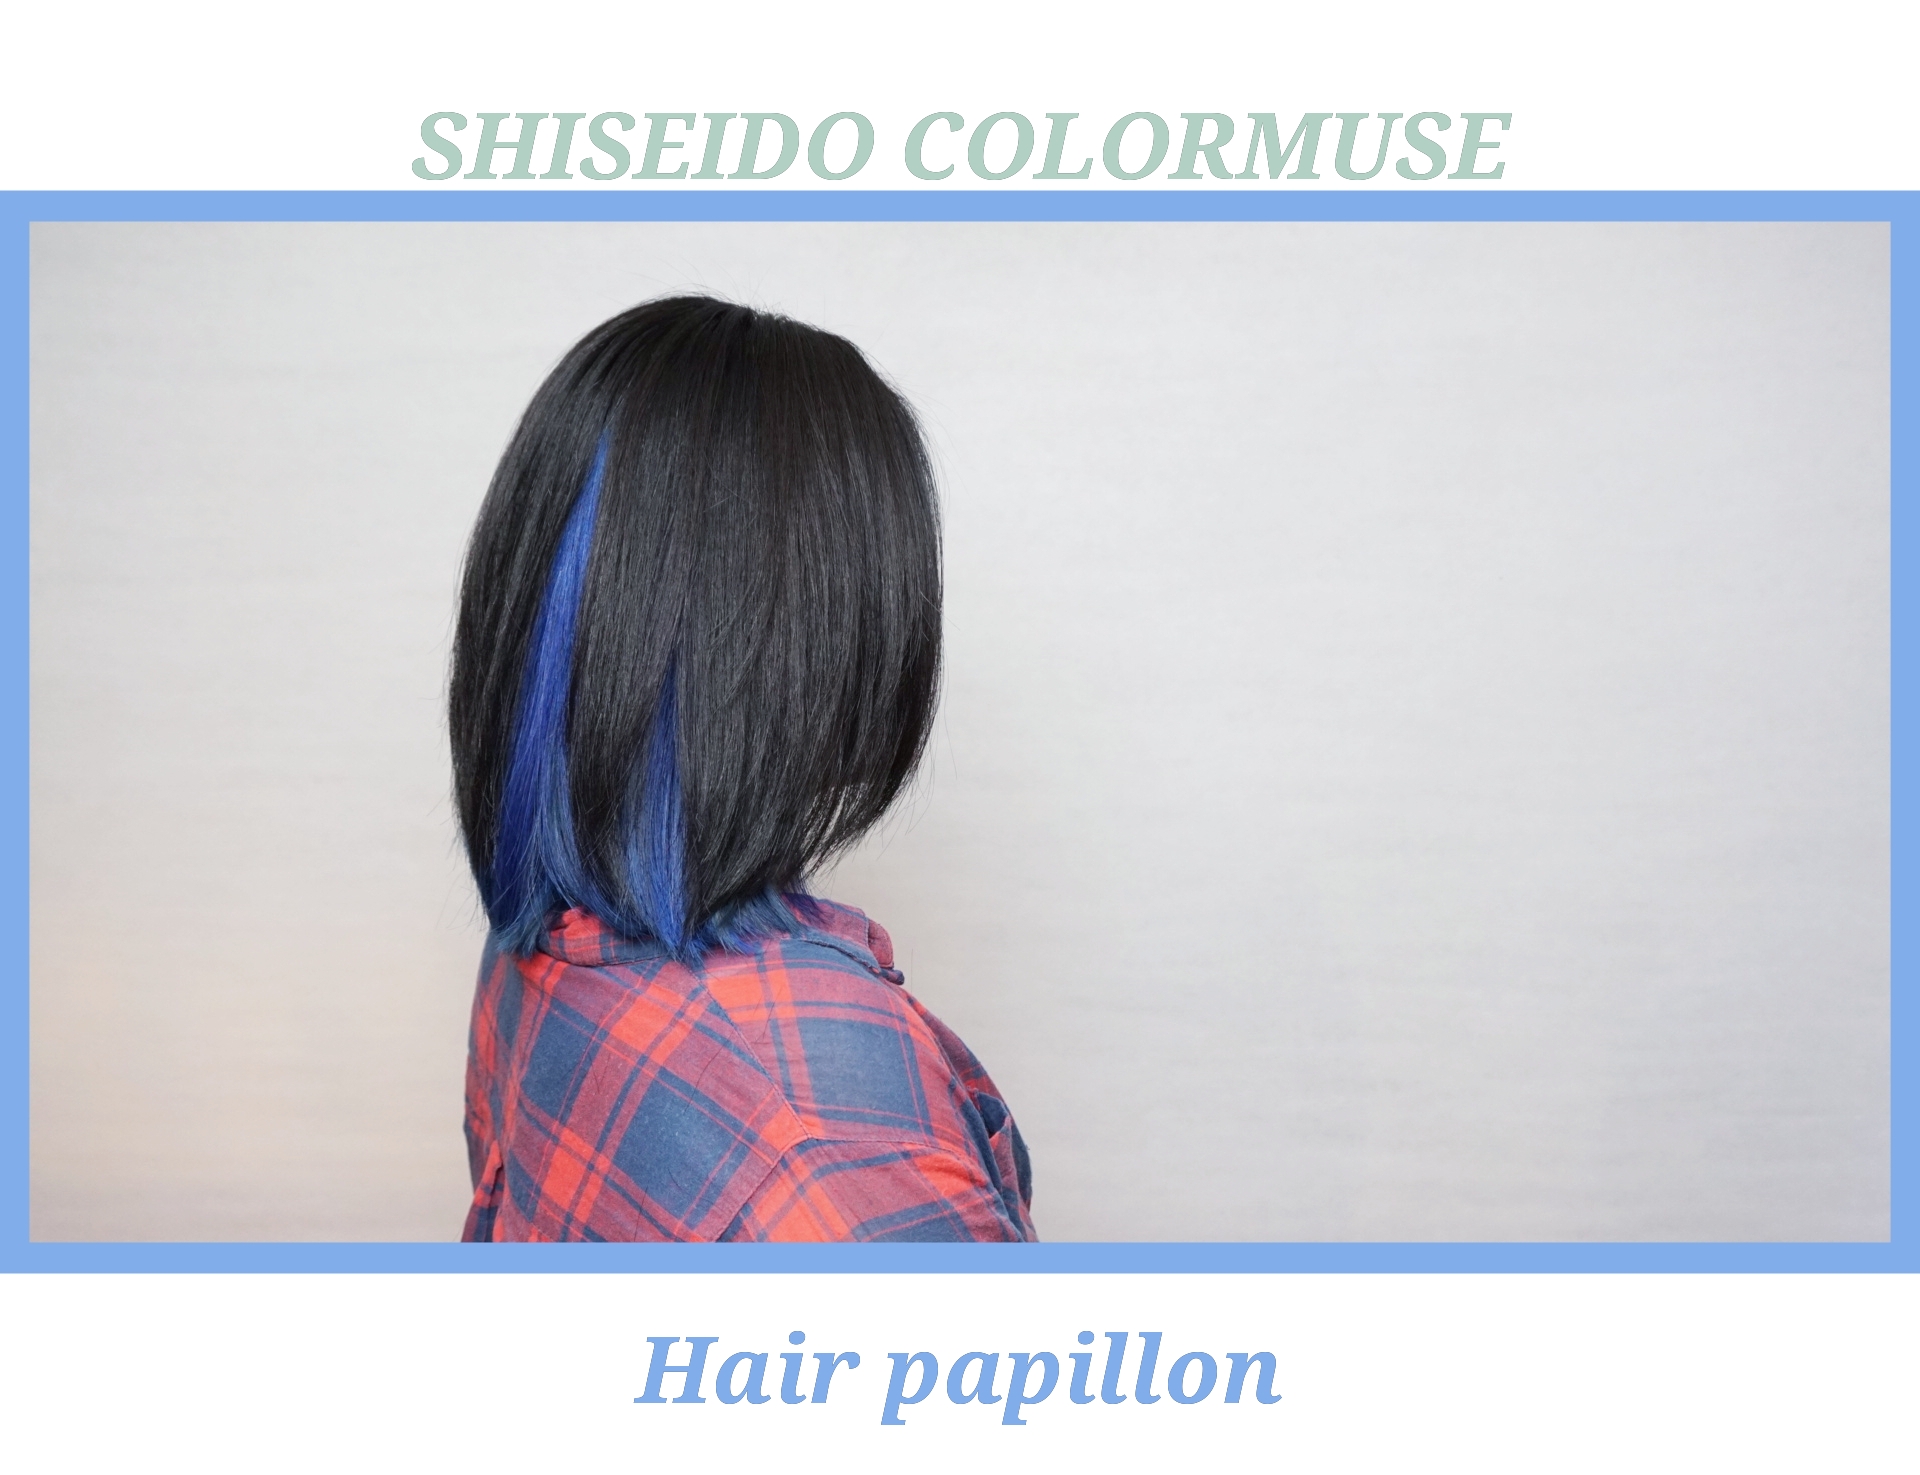 髮型作品参考:shiseido colormuse